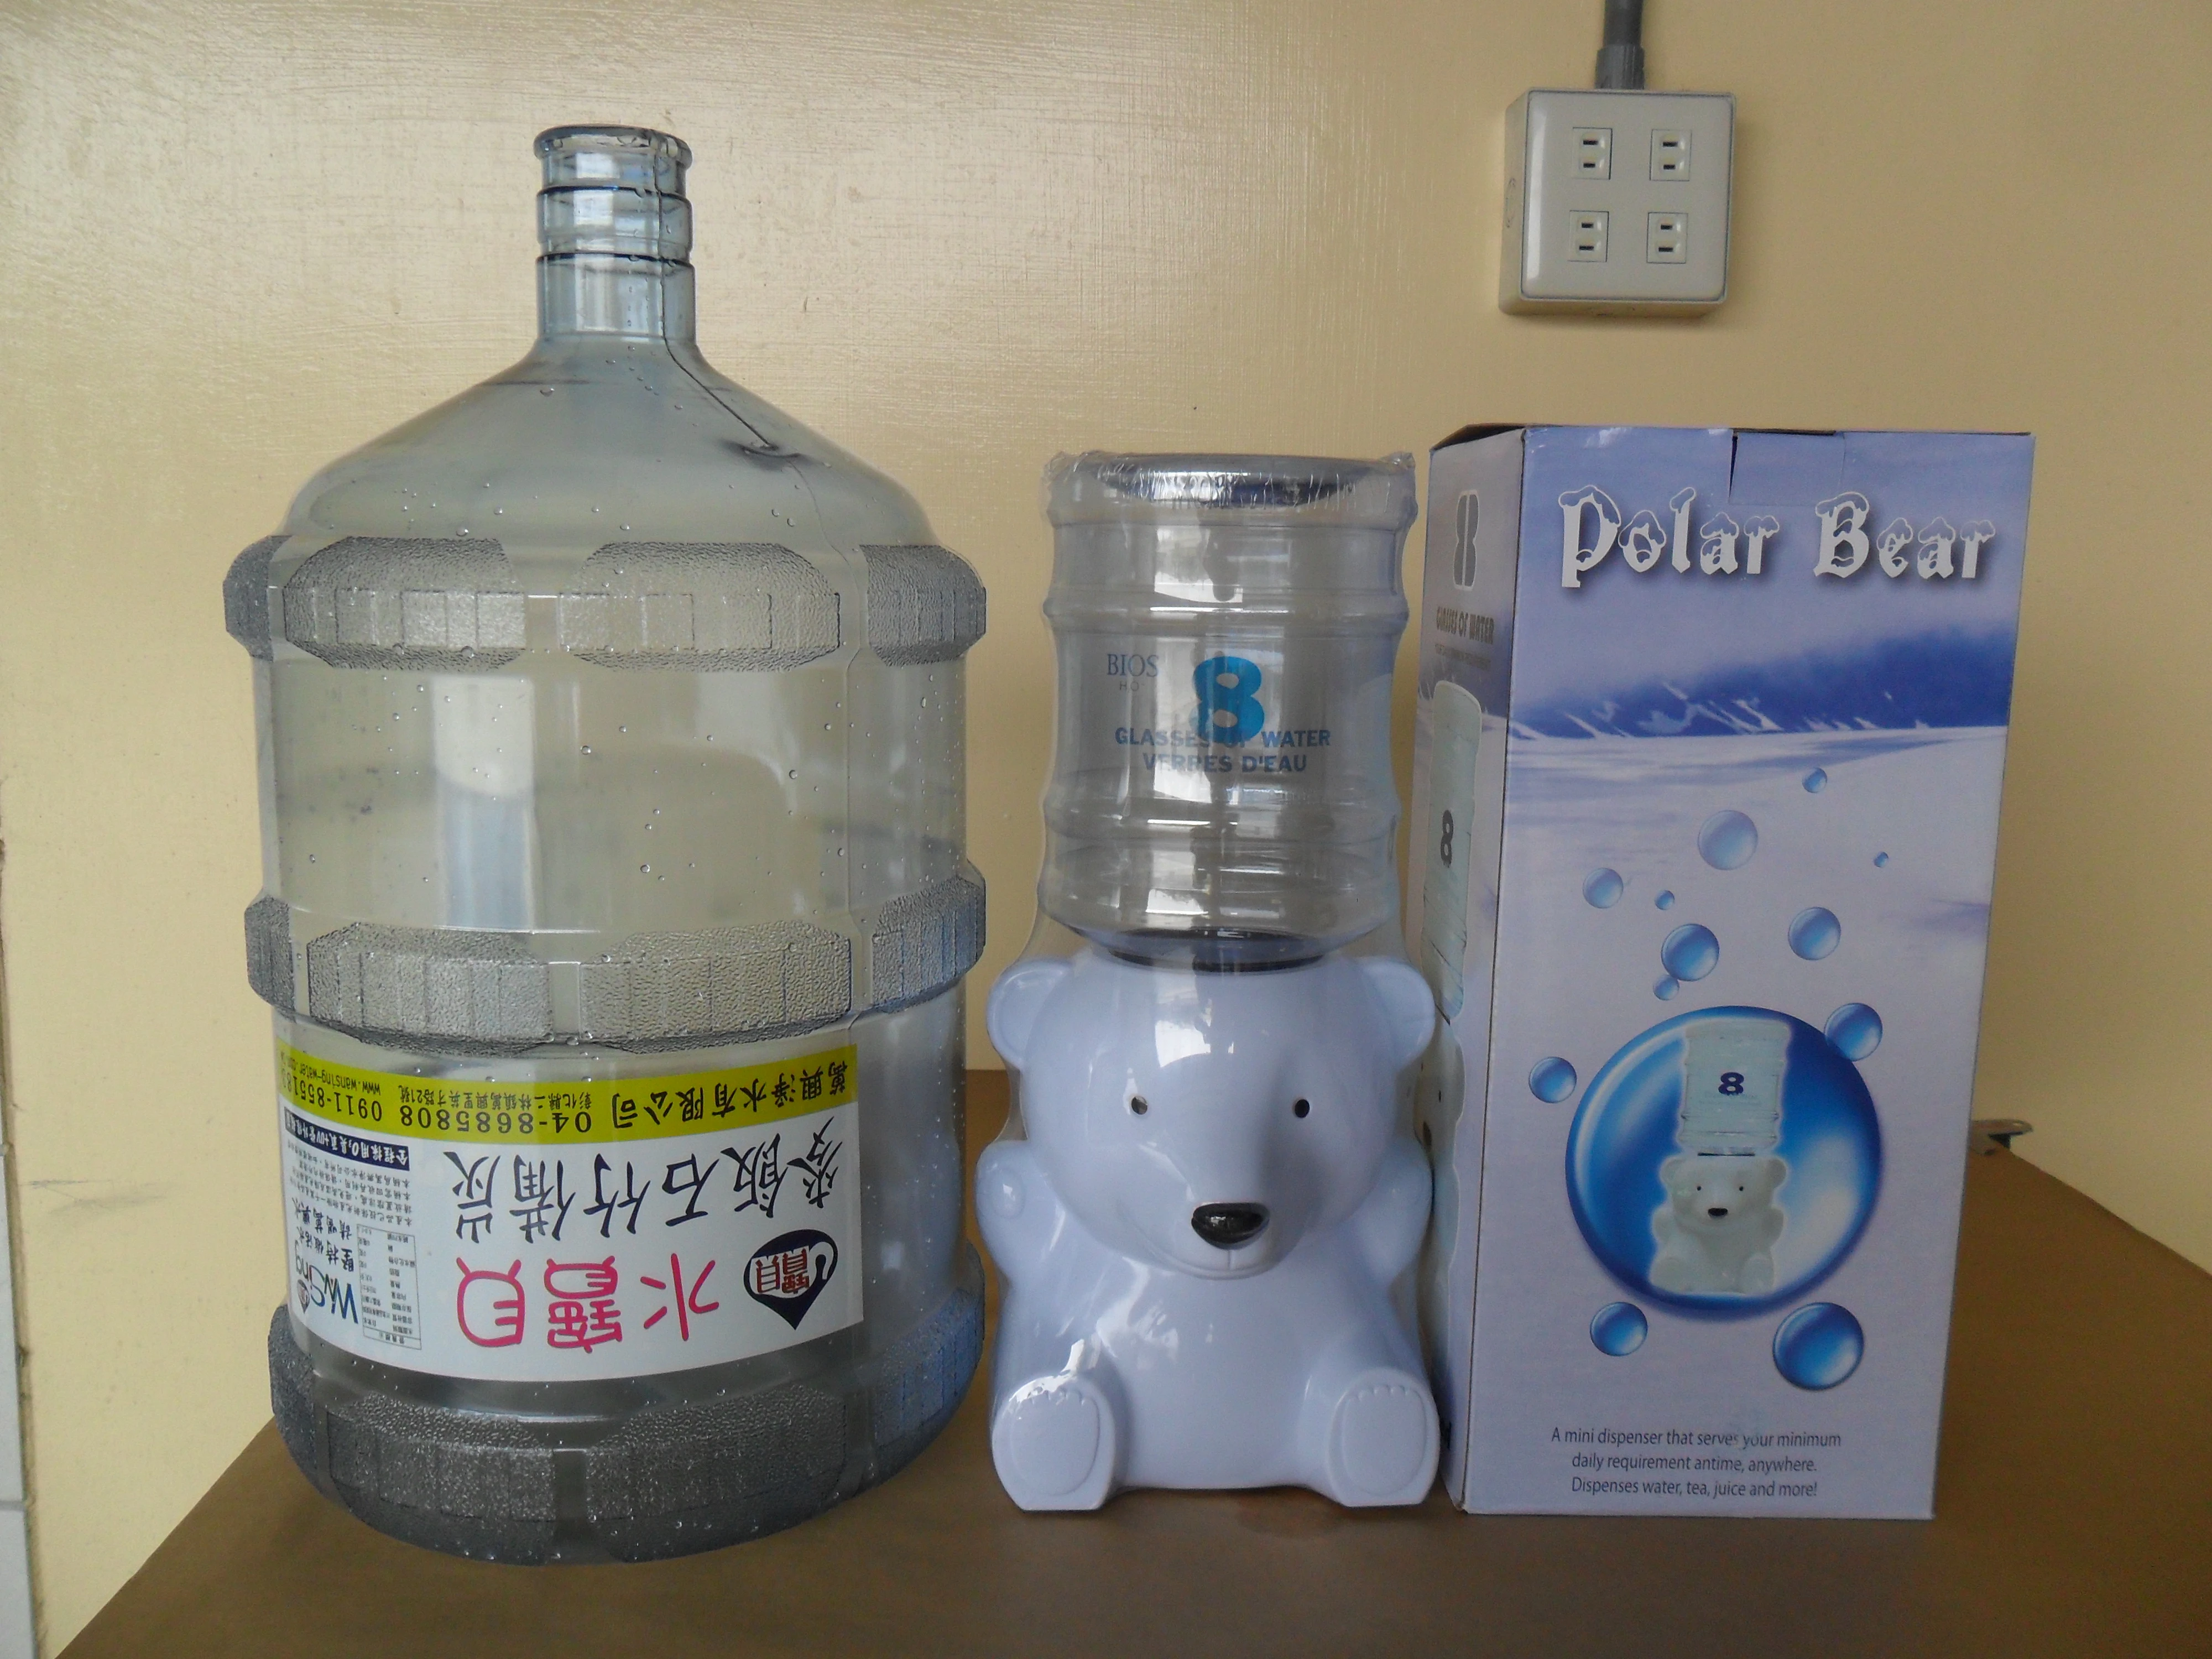 小飲水機-8杯裝迷你飲水機-小白熊飲水機